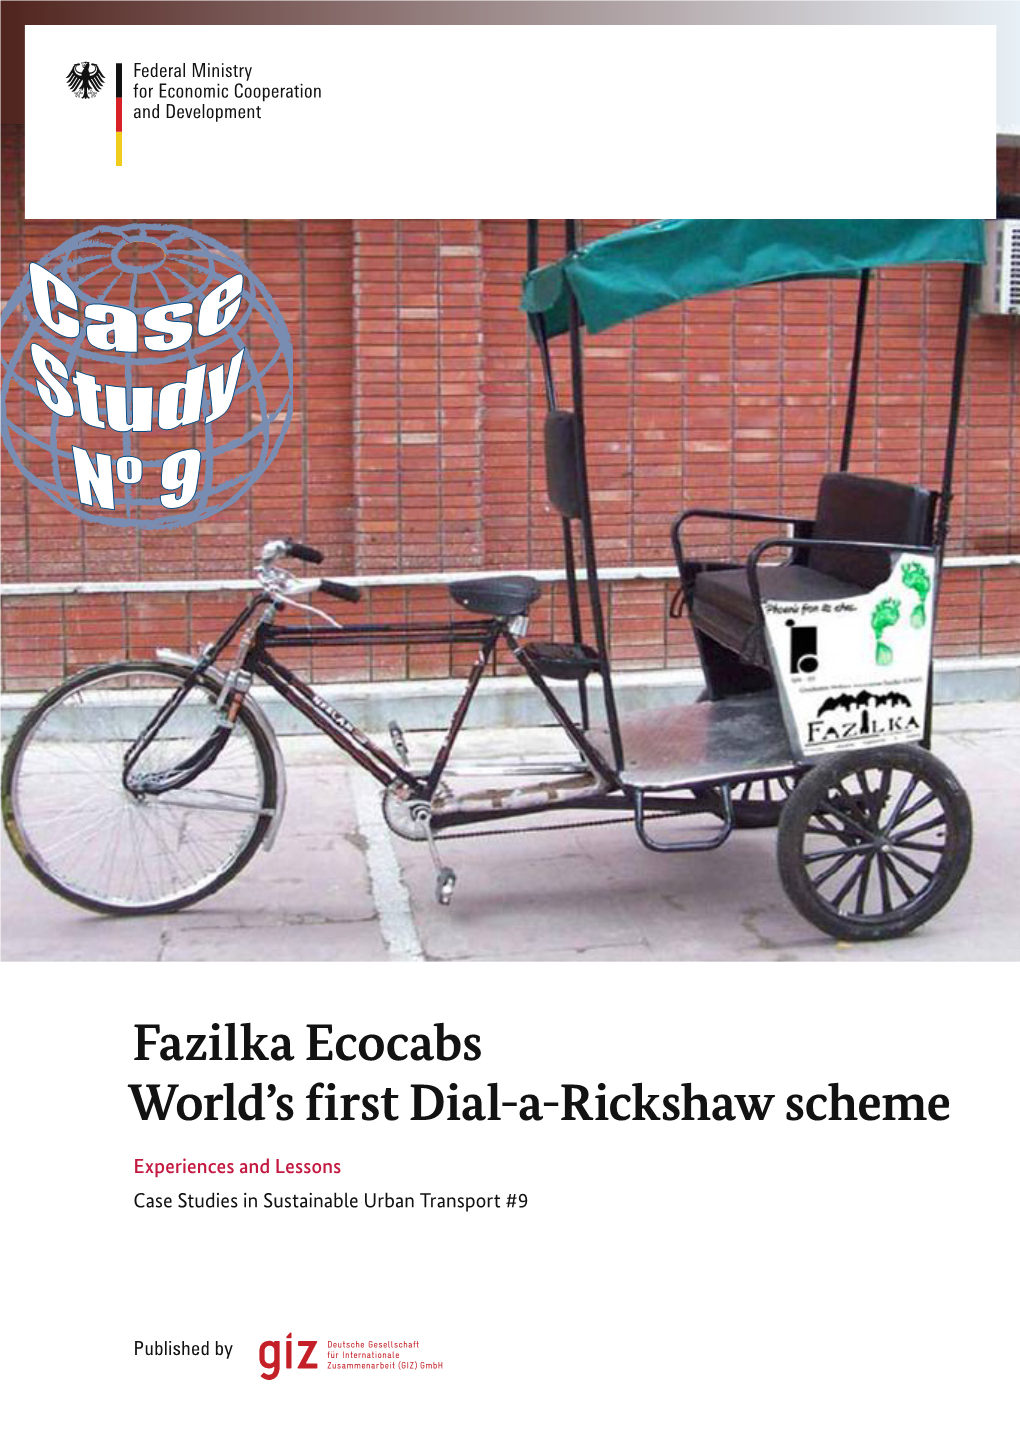 Fazilka Ecocabs World's First Dial-A-Rickshaw Scheme